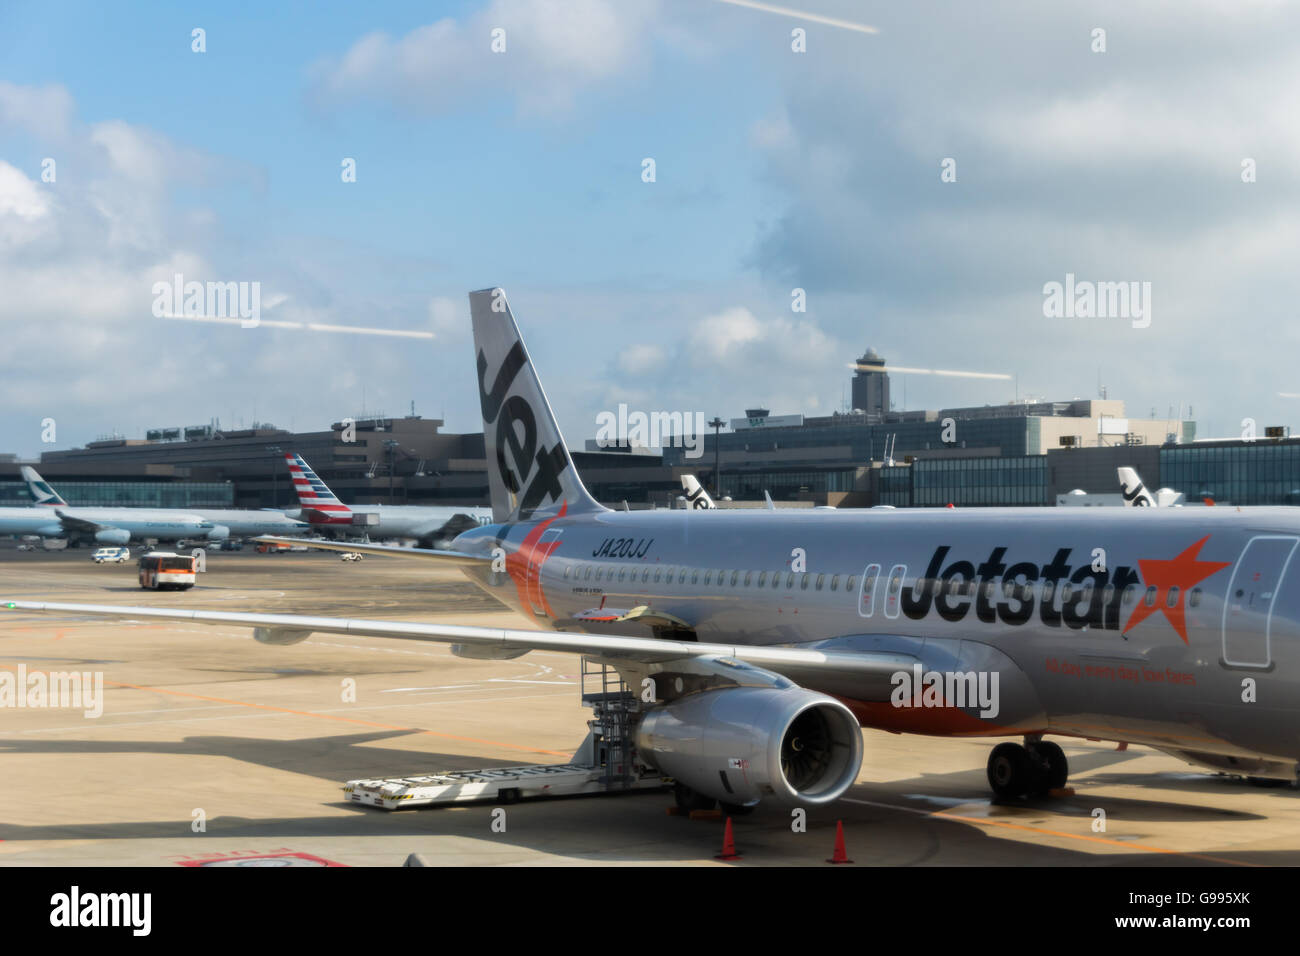 Jetstar Airways Flugzeug geschleppt am internationalen Flughafen Narita, Japan Stockfoto